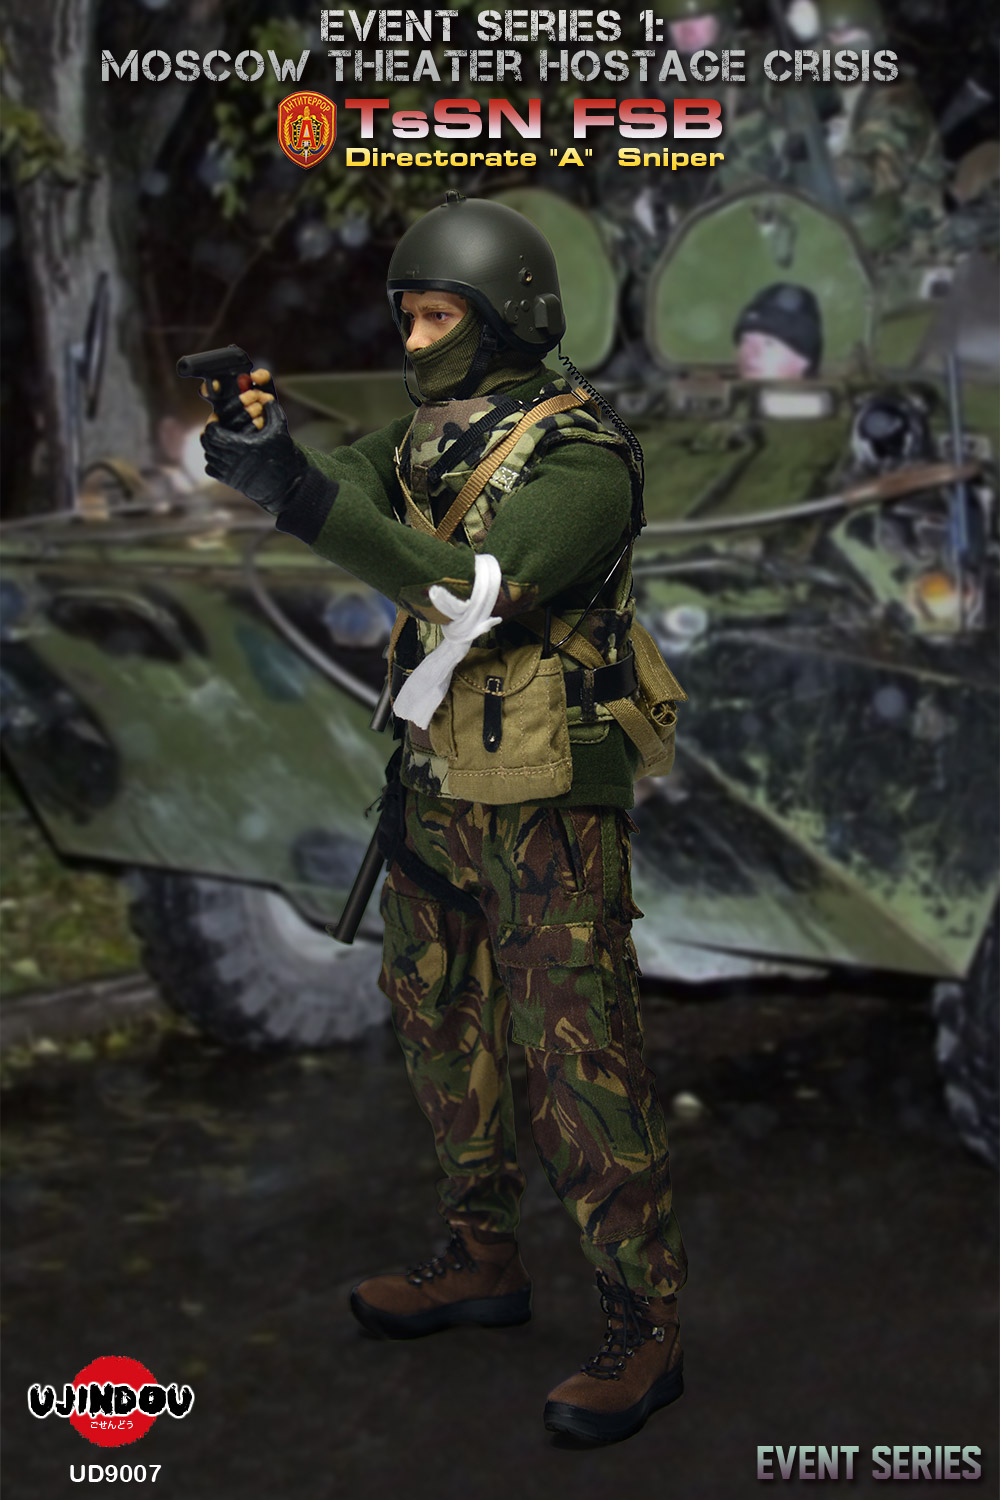 Russian MTF squad Babushka 1 entering facility where containment